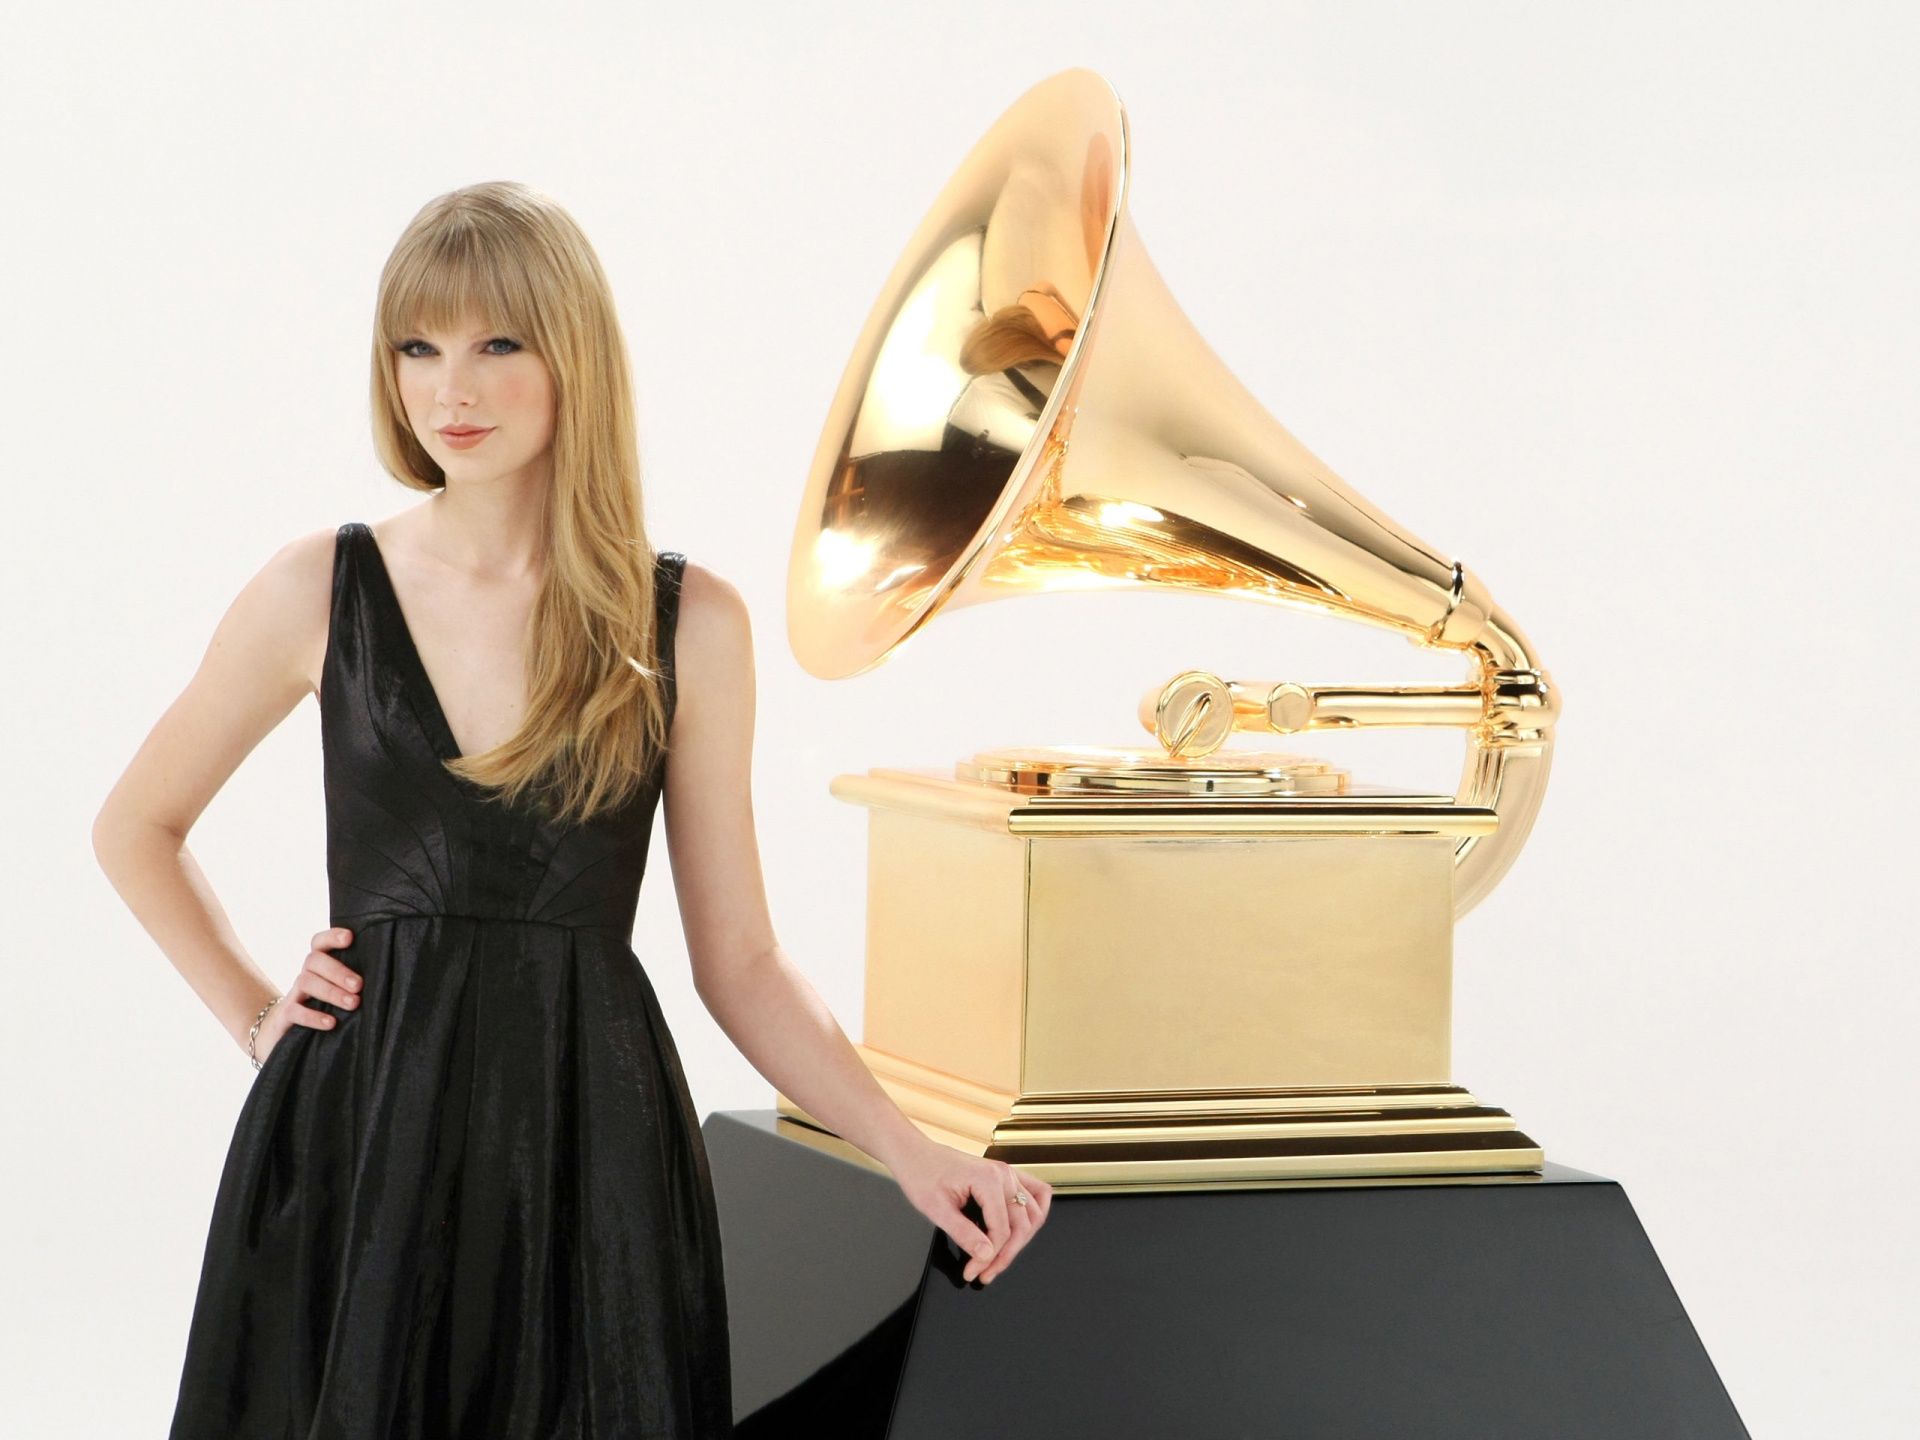 Grammy Wallpaper. Grammy Norma Wallpaper, Grammy Wallpaper and Grammy Award Wallpaper